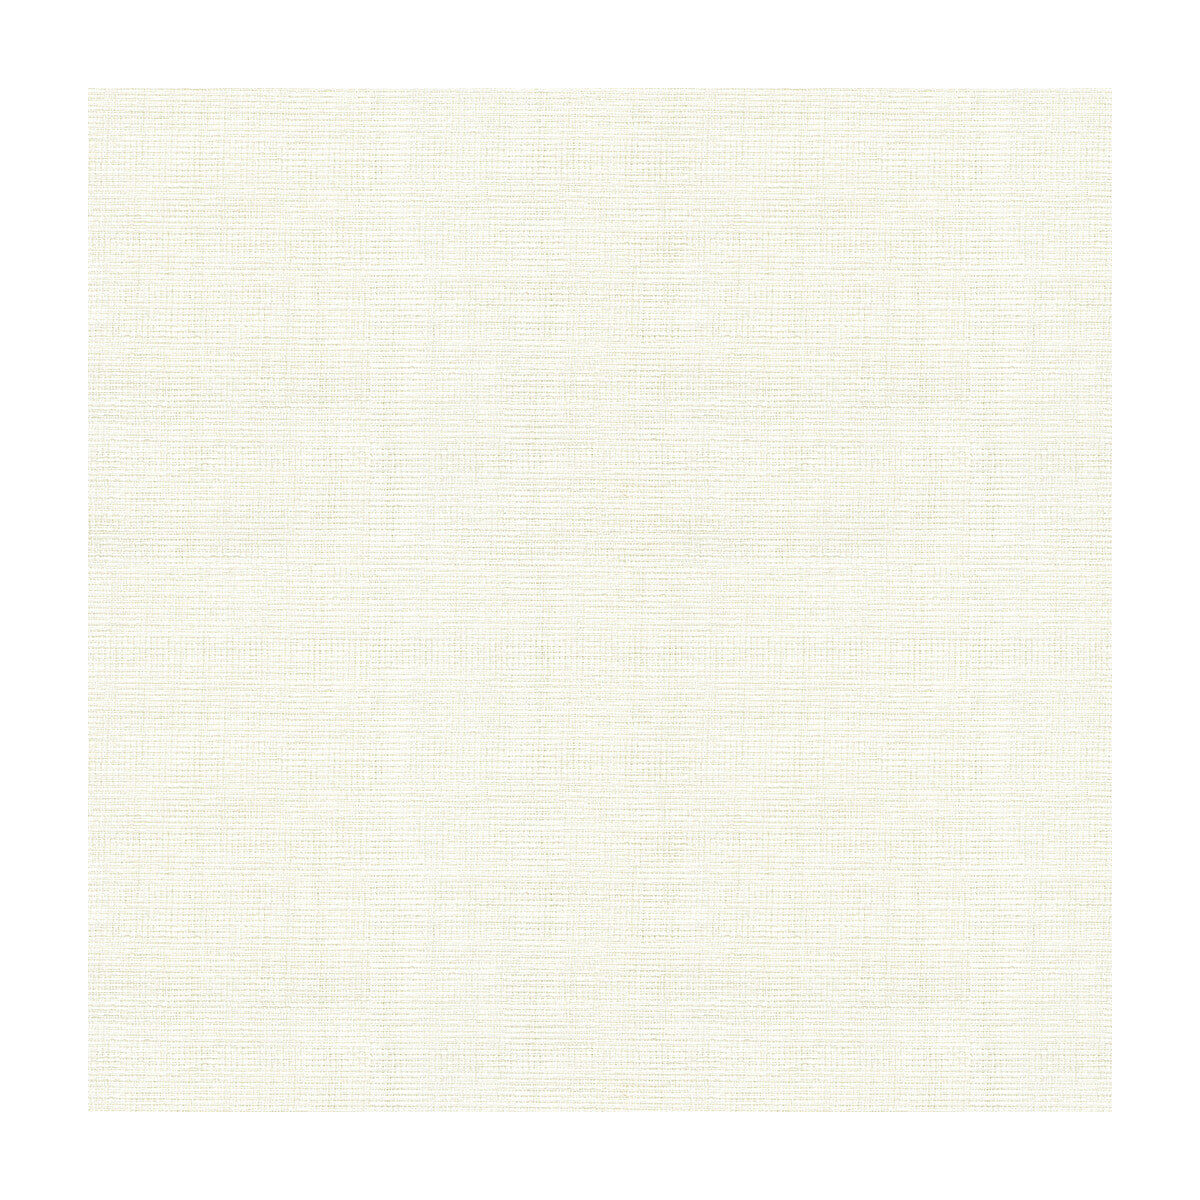 Kravet Basics fabric in 4125-101 color - pattern 4125.101.0 - by Kravet Basics